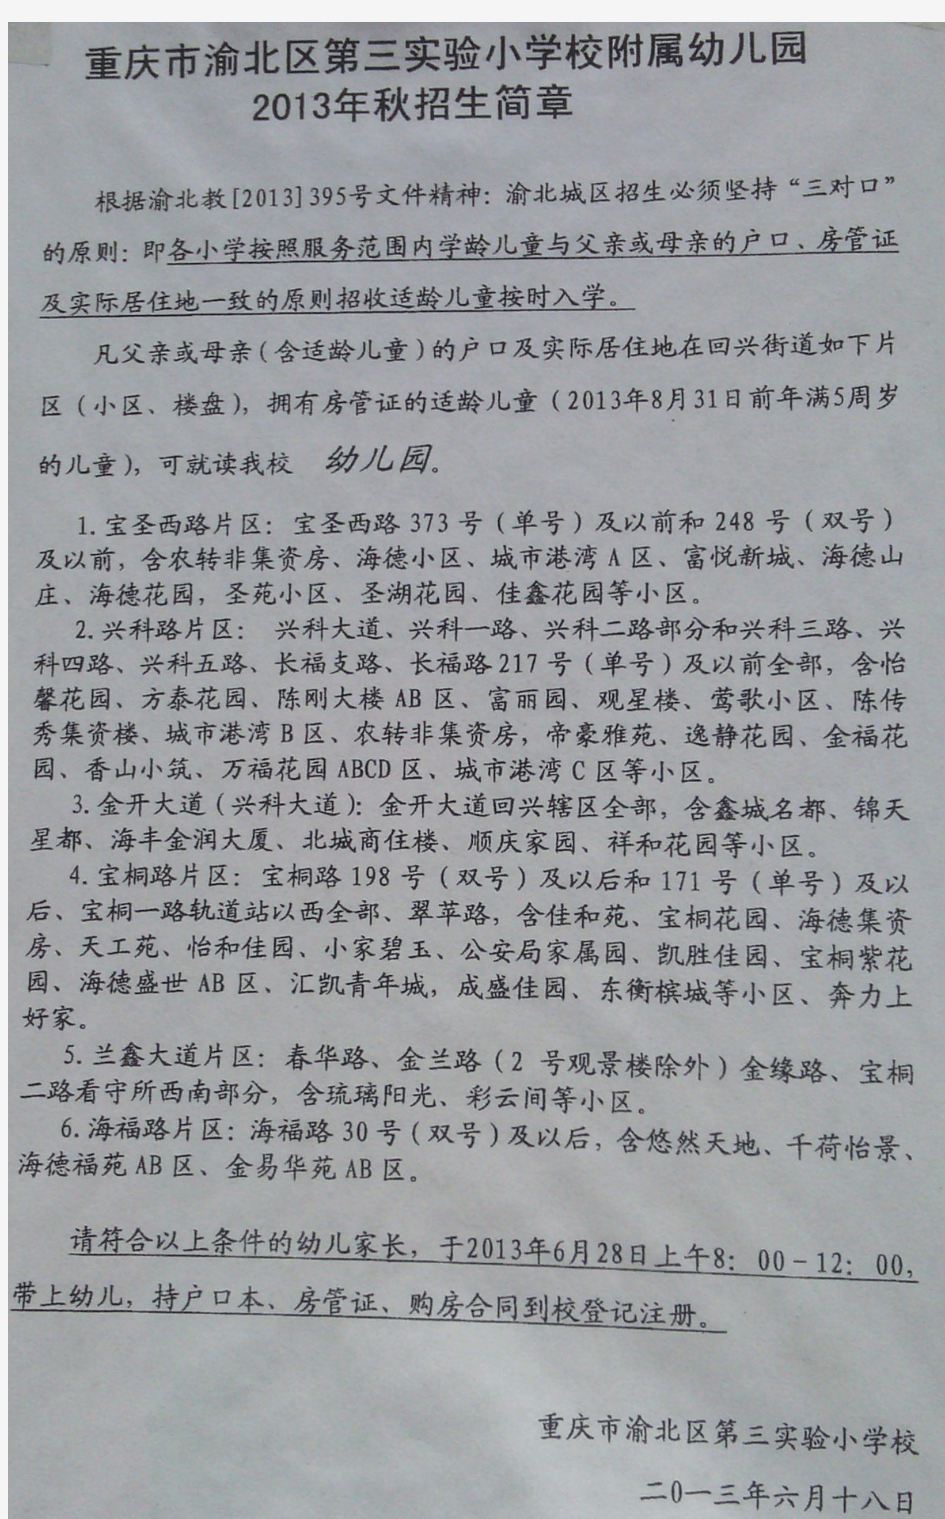 重庆市渝北区第三实验小学校附属幼儿园2013年秋招生简章